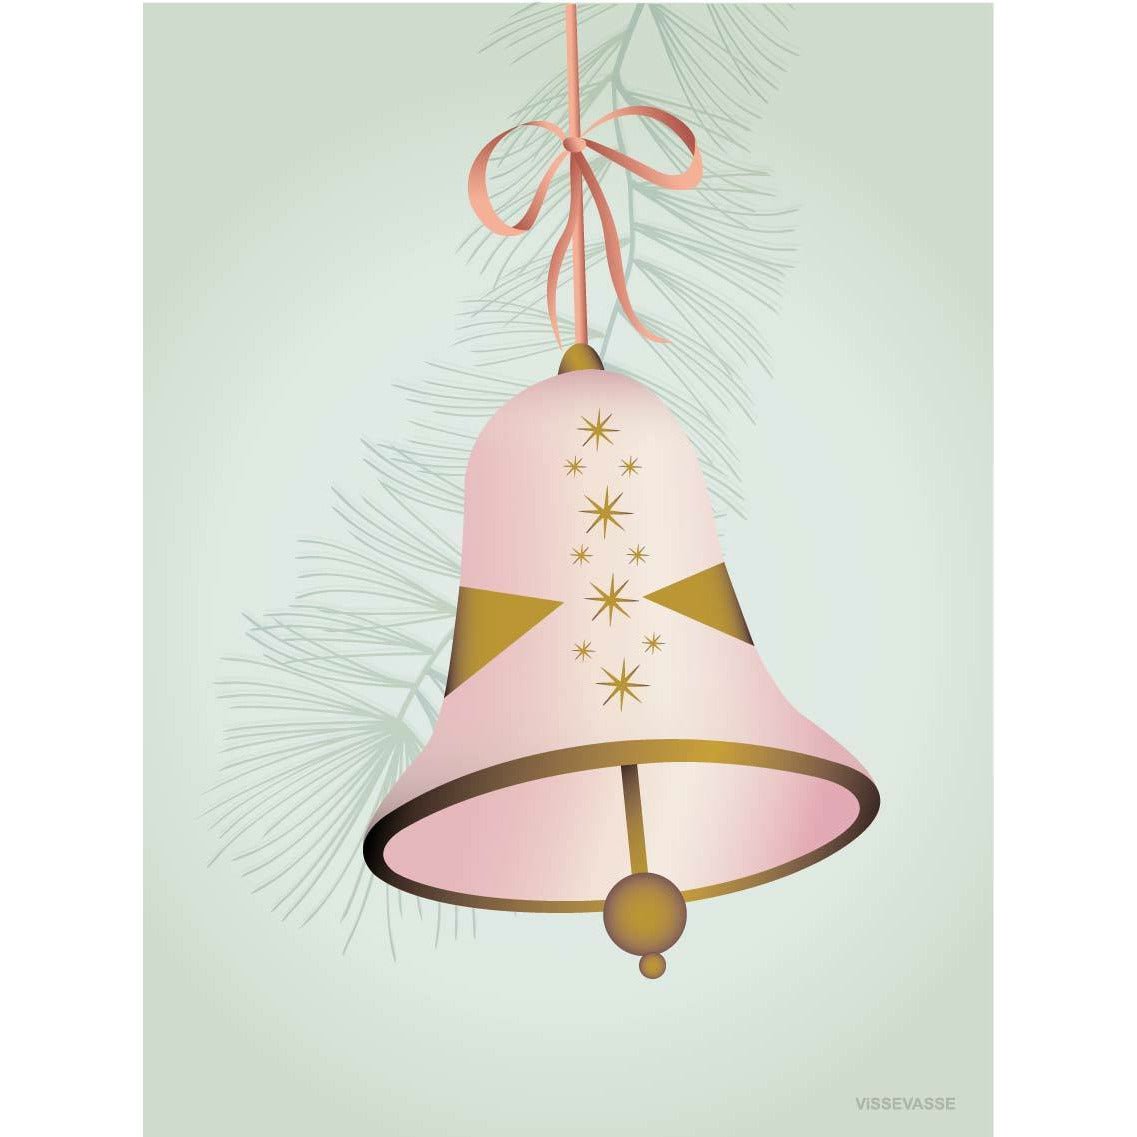 Vissevasse Julklockor tillfälligt kort, rosa, 15x21 cm